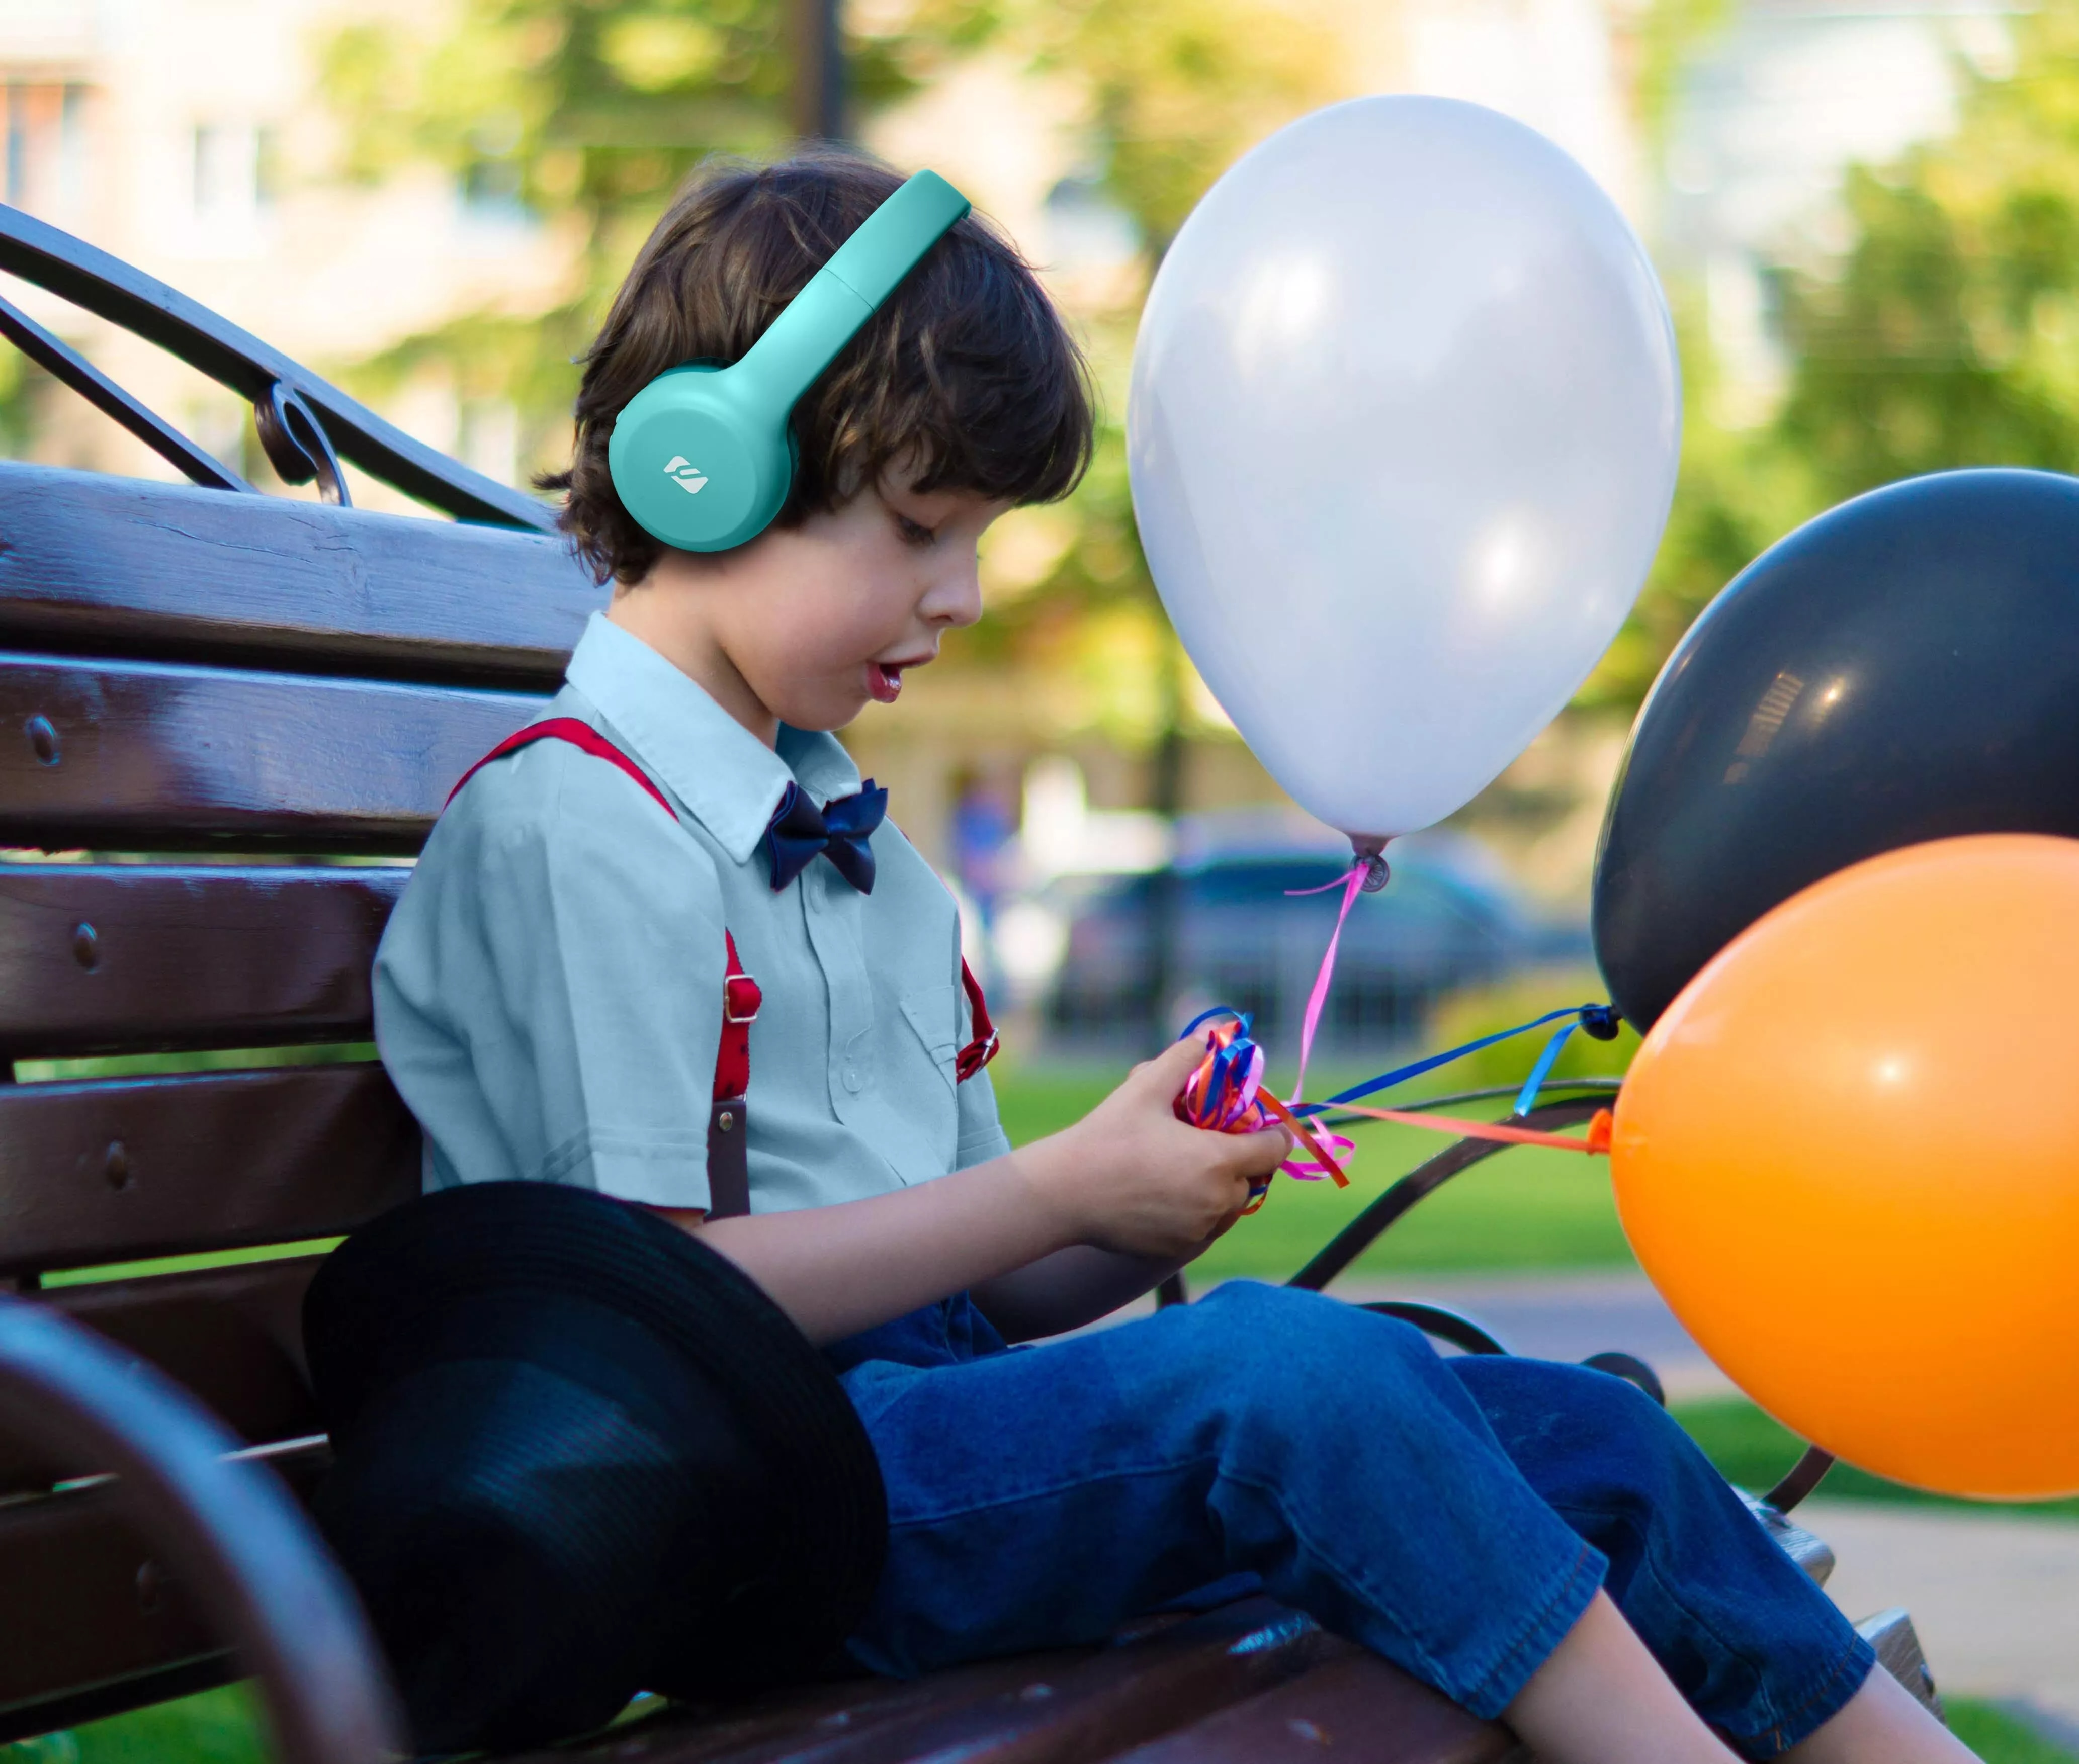 Bluetooth On-Ear Wireless Børnehovedtelefon blå